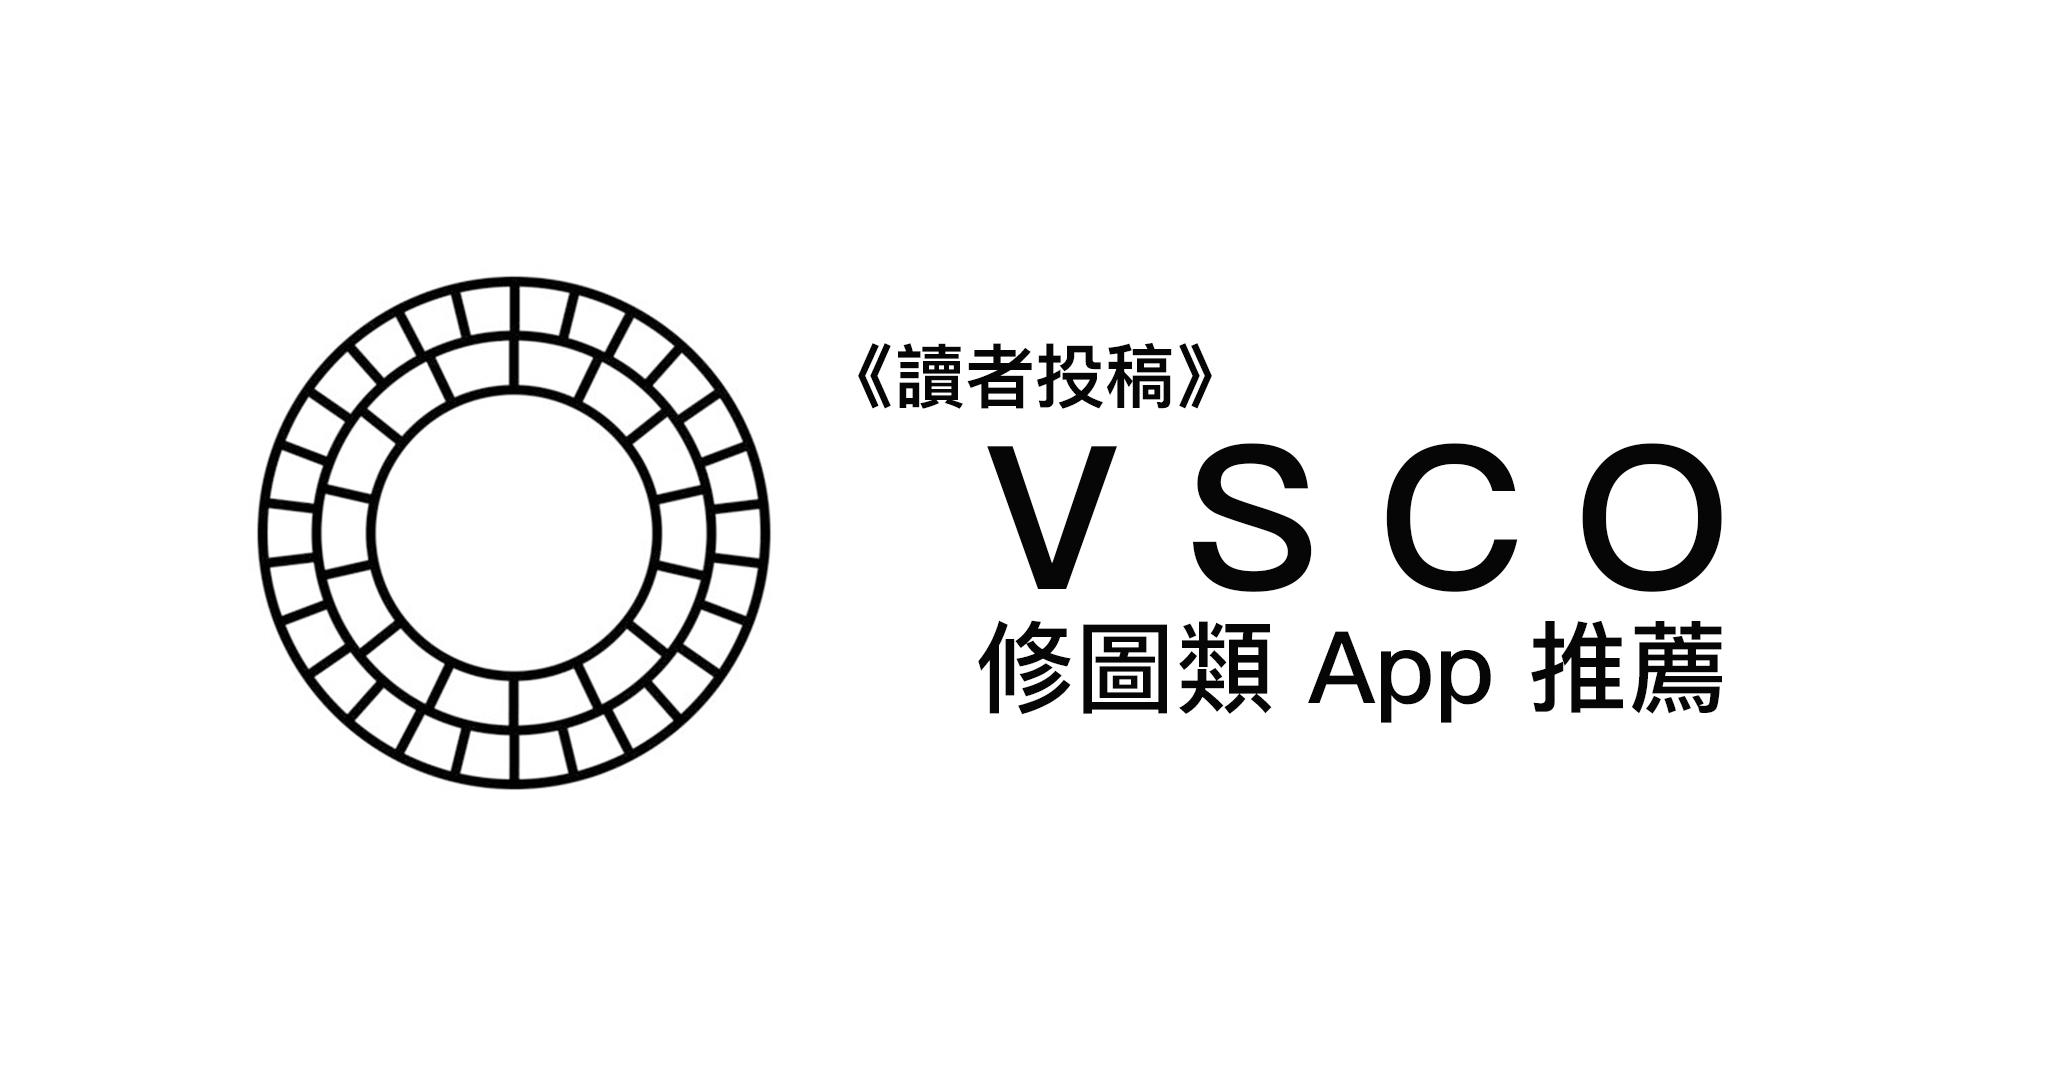 《讀者投稿》VSCO - 修圖類 App 推薦